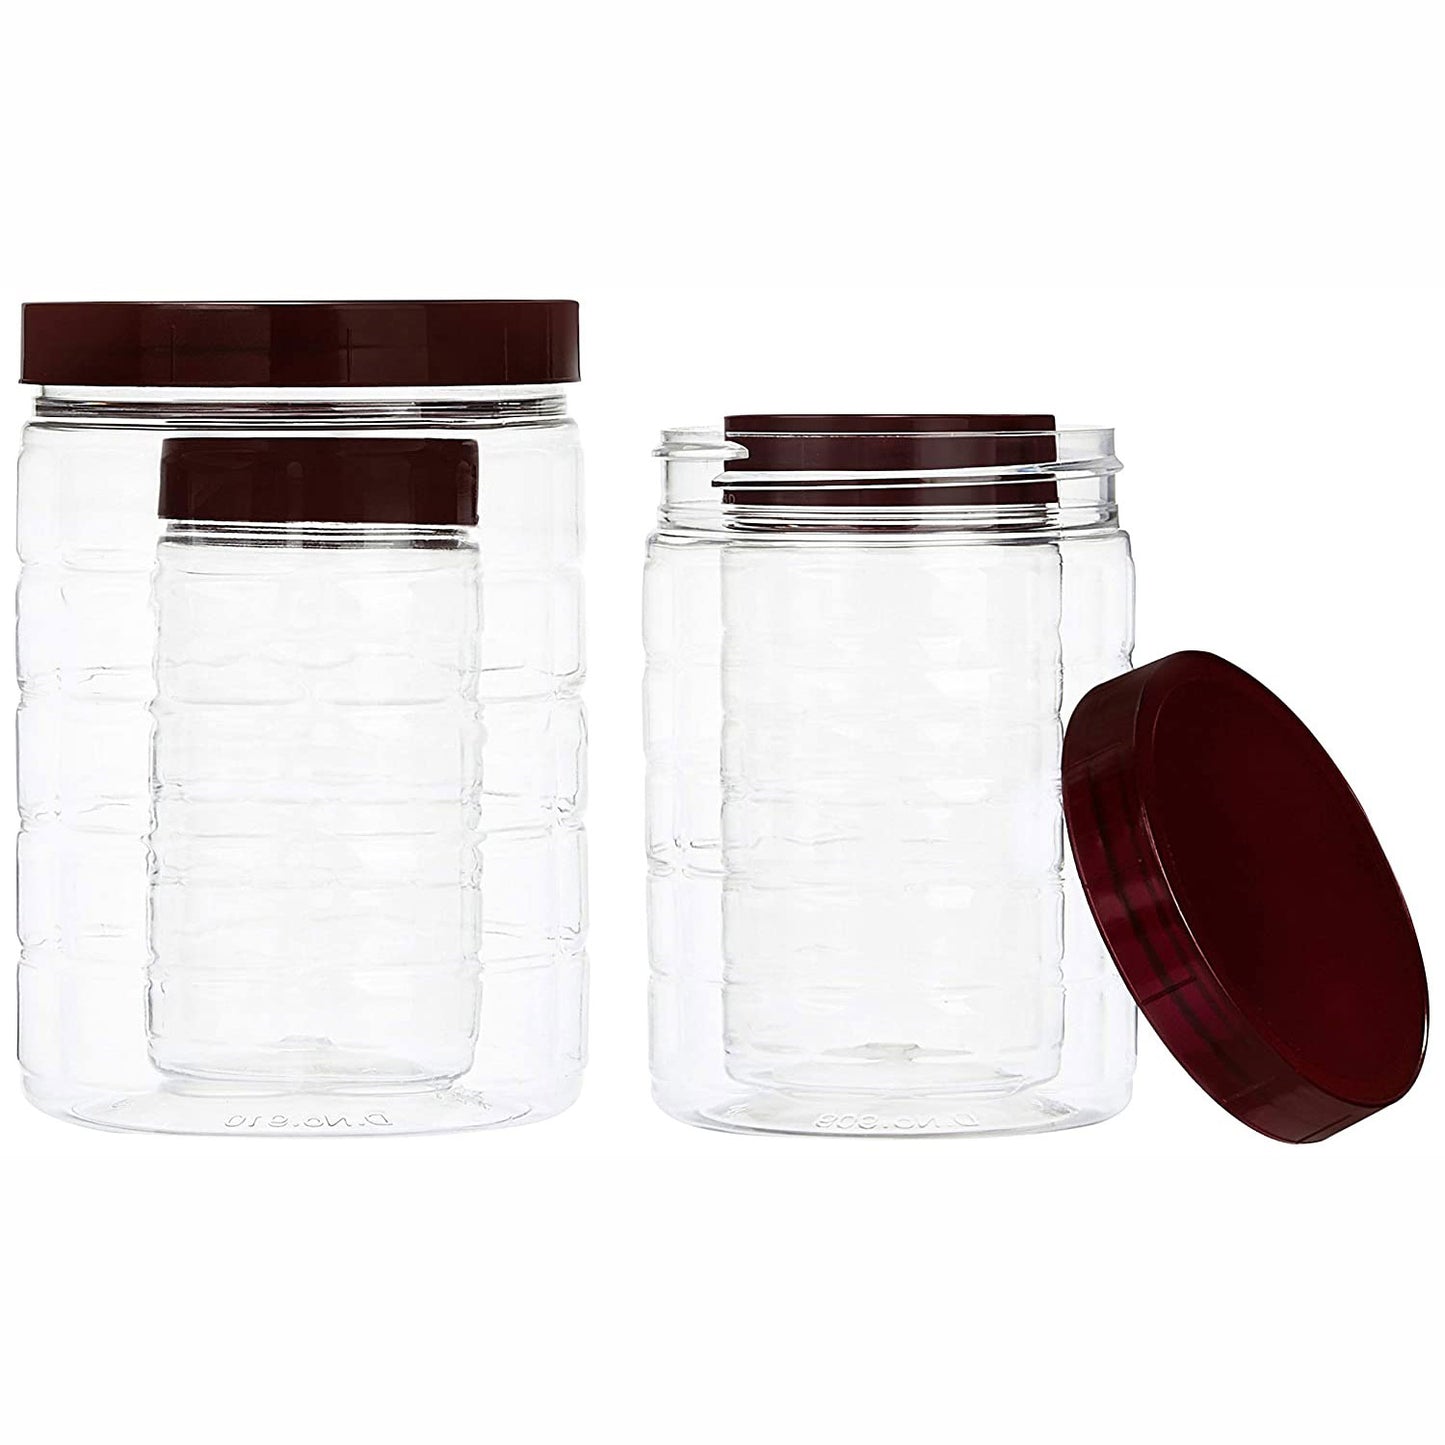 Plastic Jar Container Set of 6